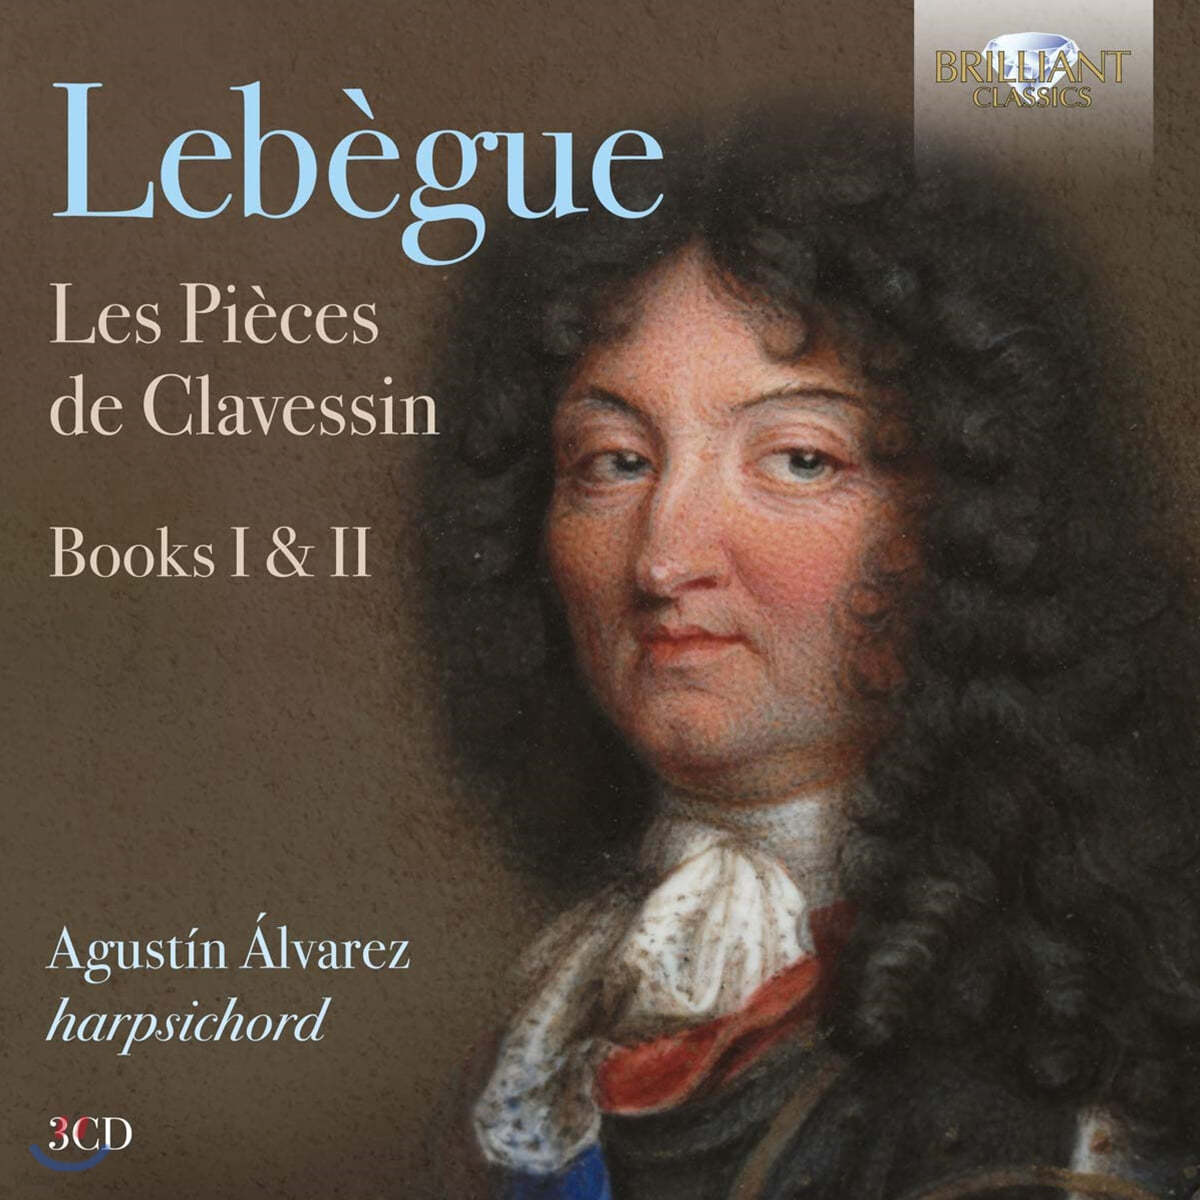 Agustin Alvarez 니콜라 리베그: 하프시코드 작품집 1&#183;2권 (Nicolas Lebegue: Les Pieces de Clavessin, Books I, II)